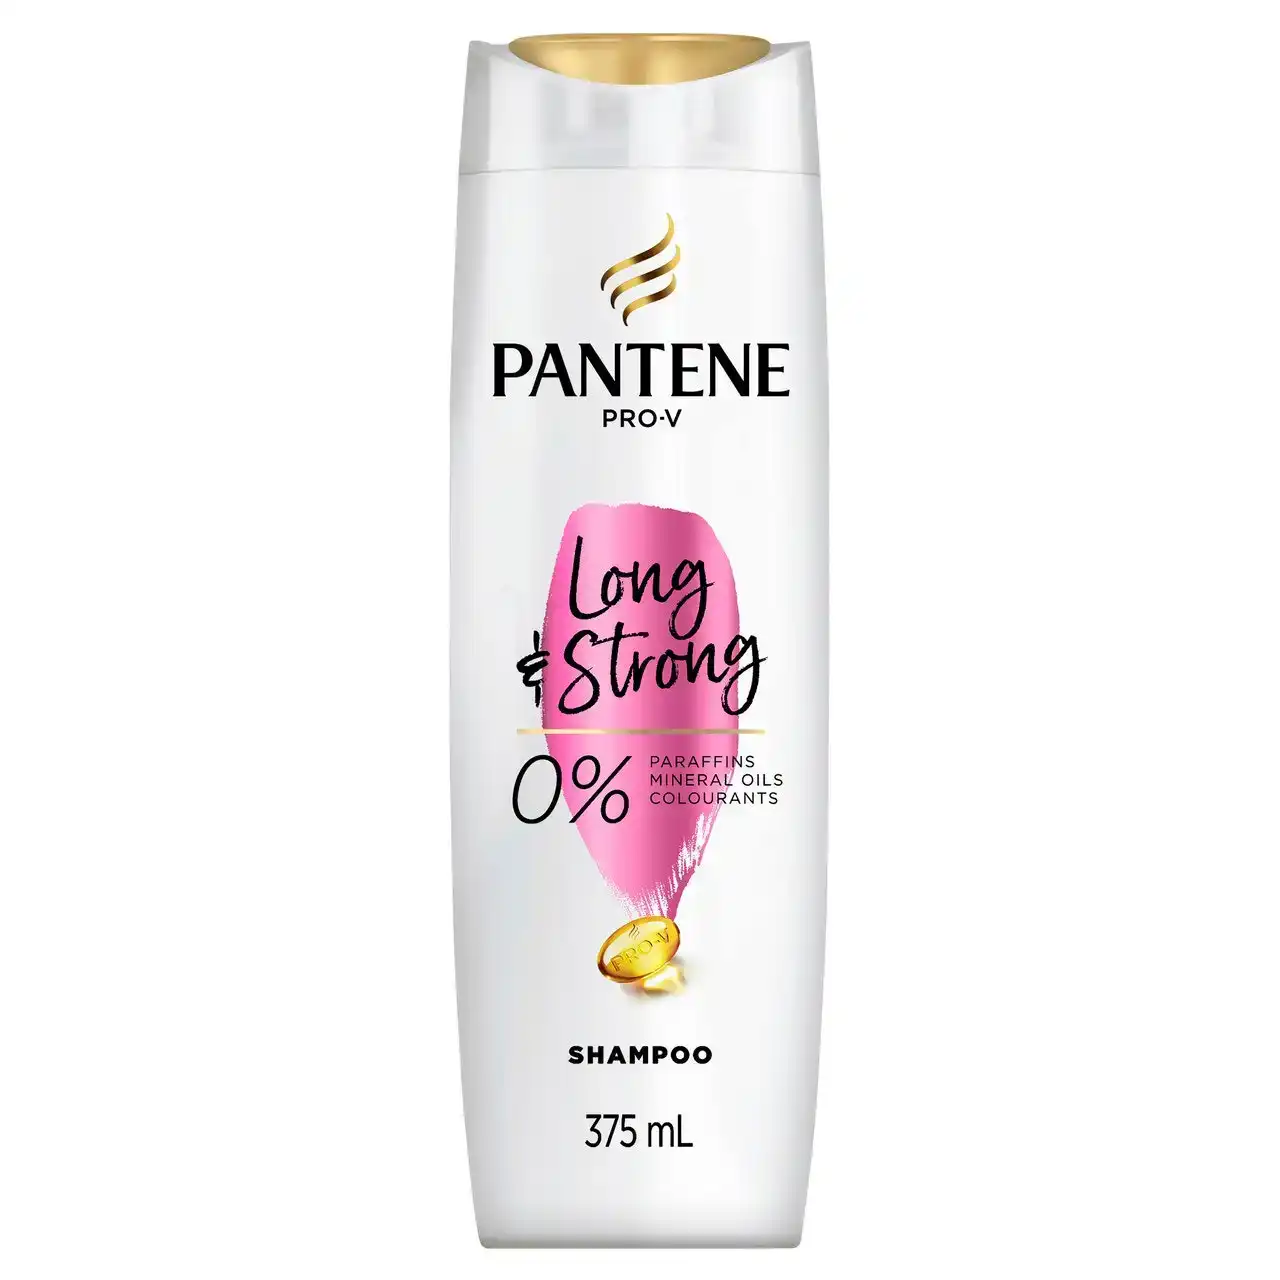 Pantene Pro-V Long &amp; Strong Shampoo: Strengthening Shampoo for Dry, Damaged Hair 375 ml